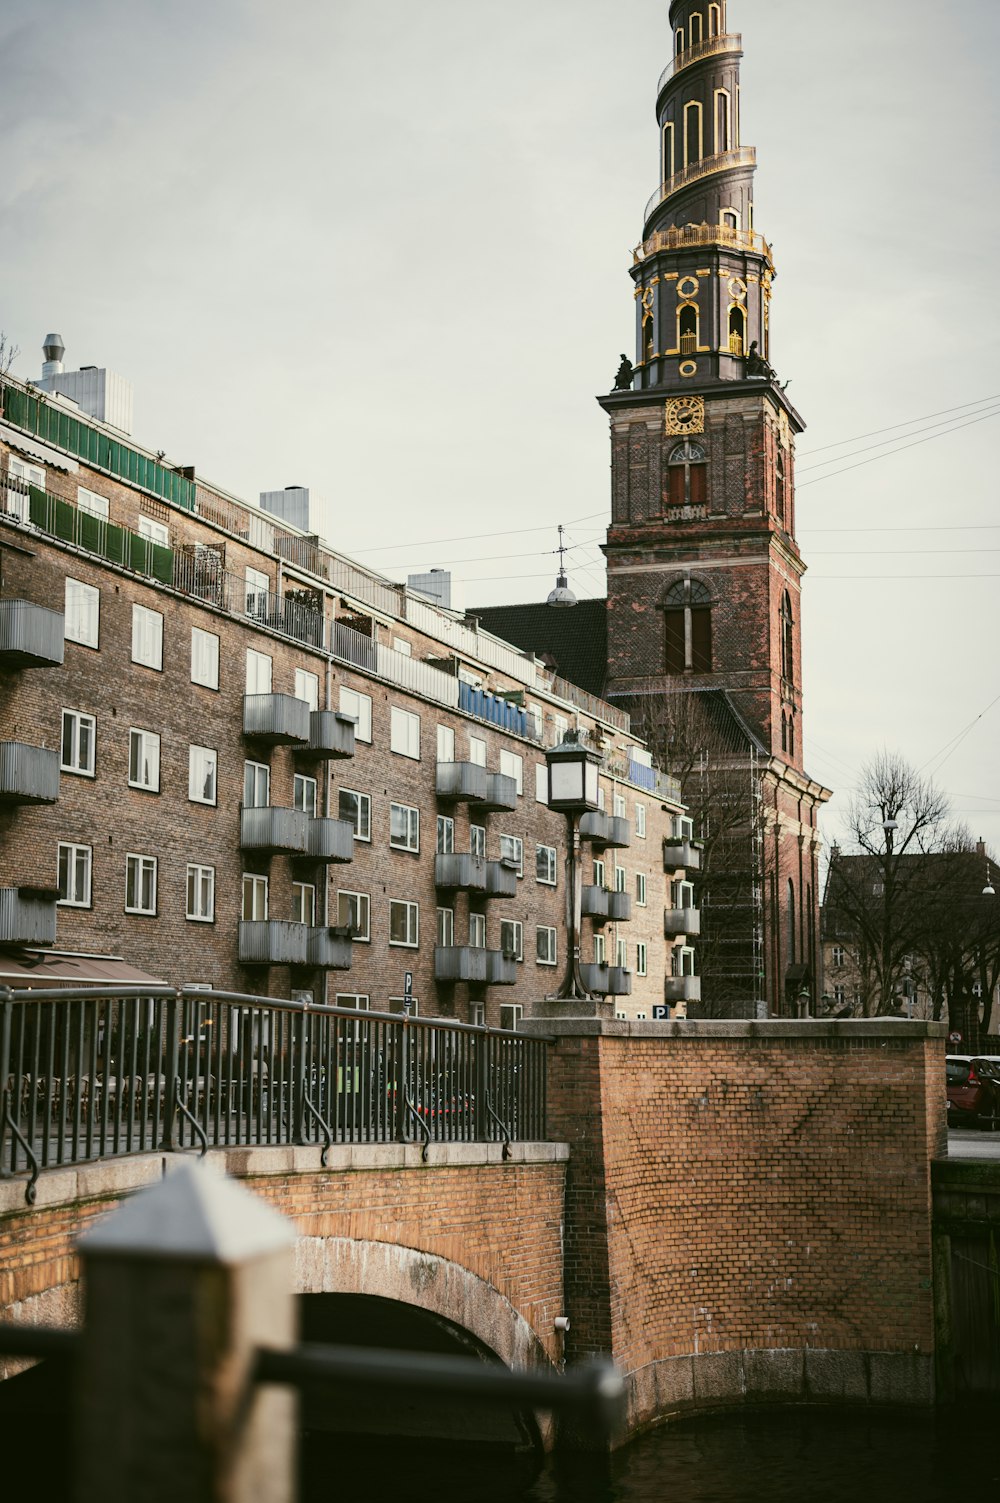 uma torre do relógio alta que se eleva sobre uma cidade